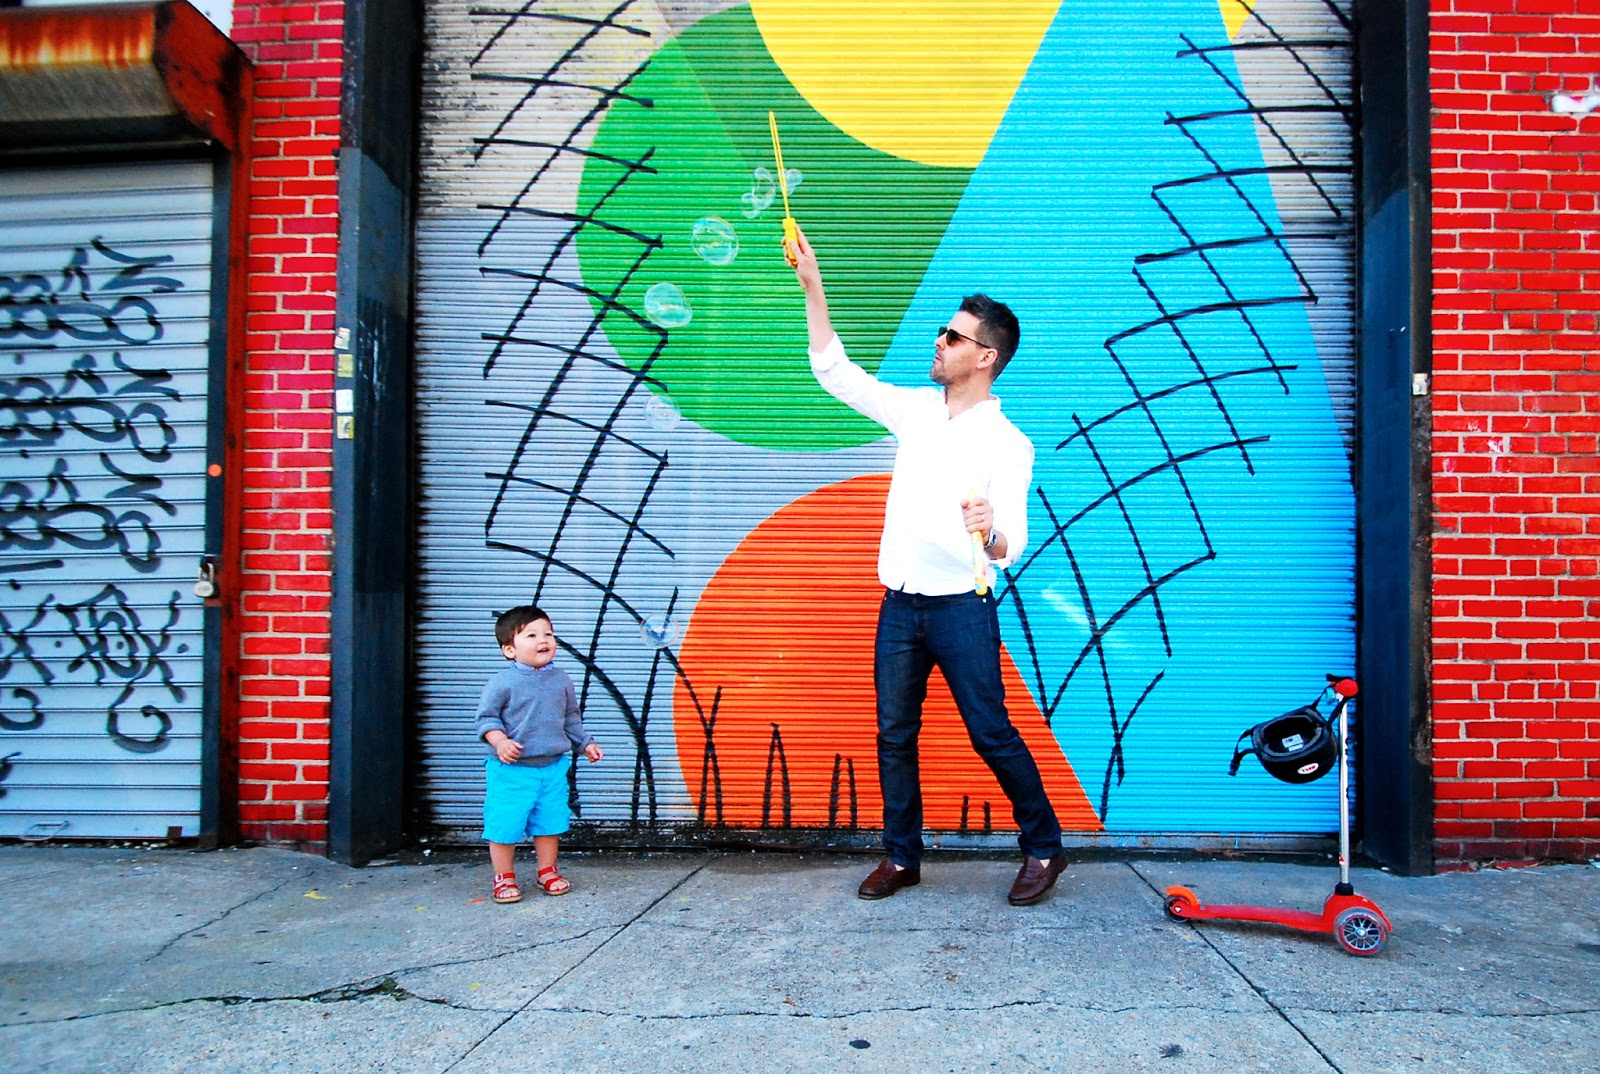 Swoon S Street Art In Red Hook Brooklyn Hookedblog Street Art